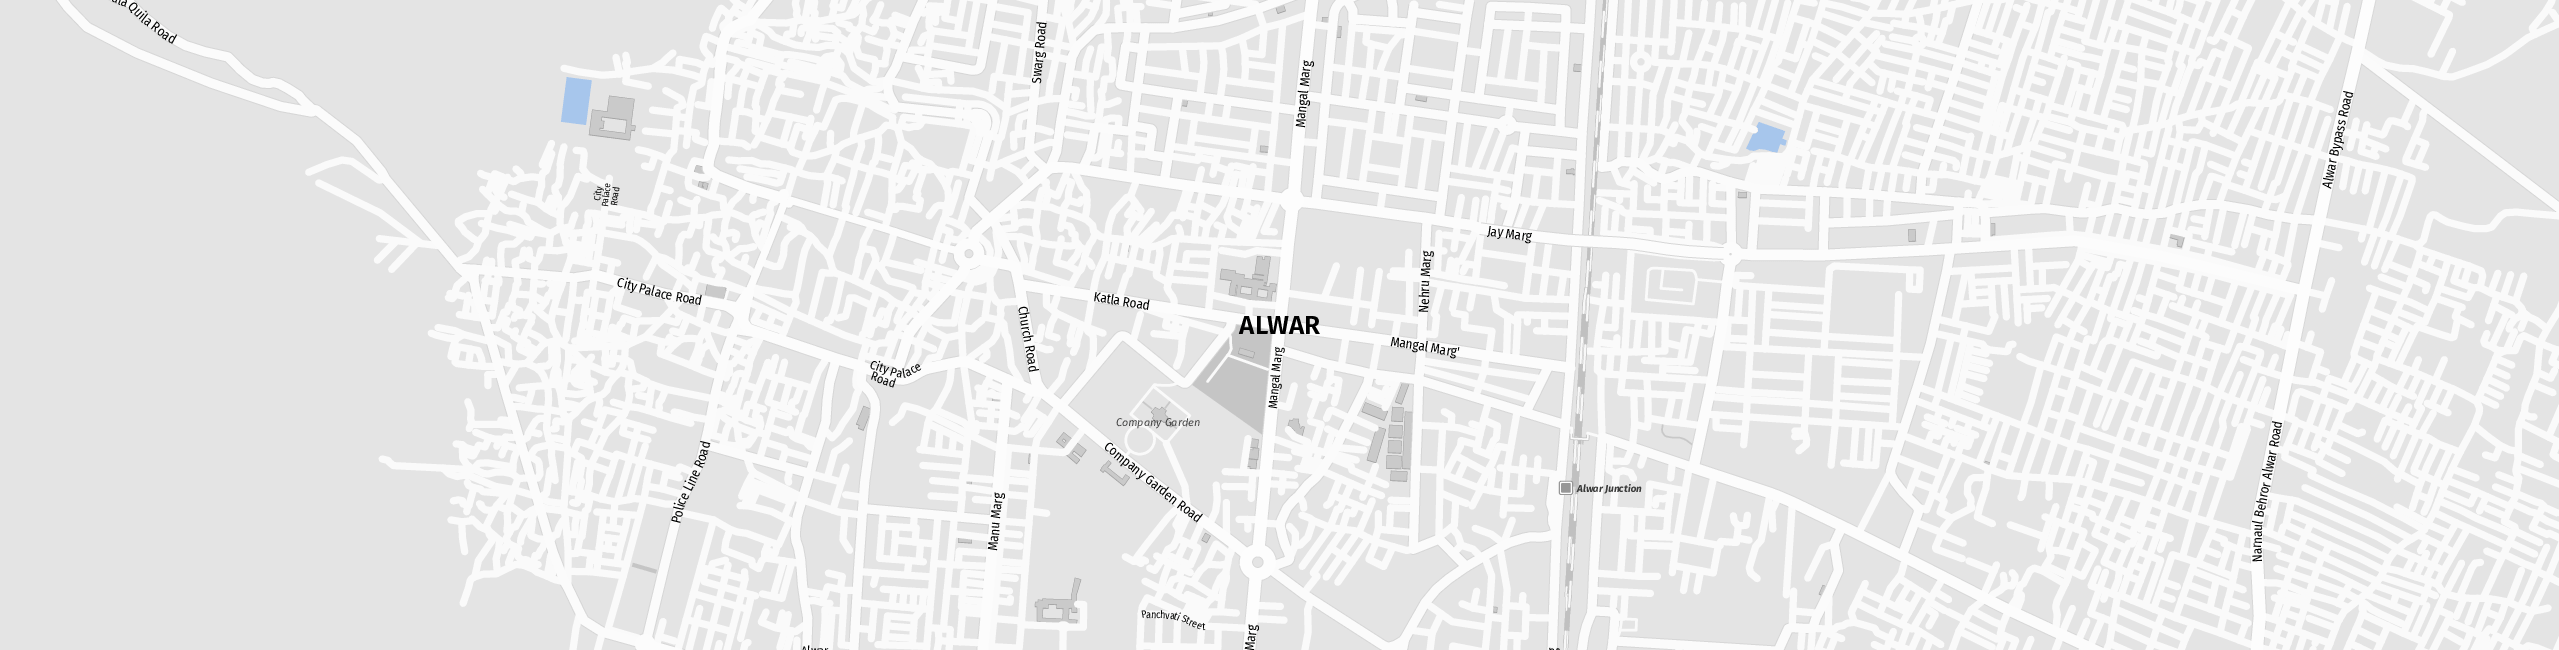 Stadtplan Alwar zum Downloaden.